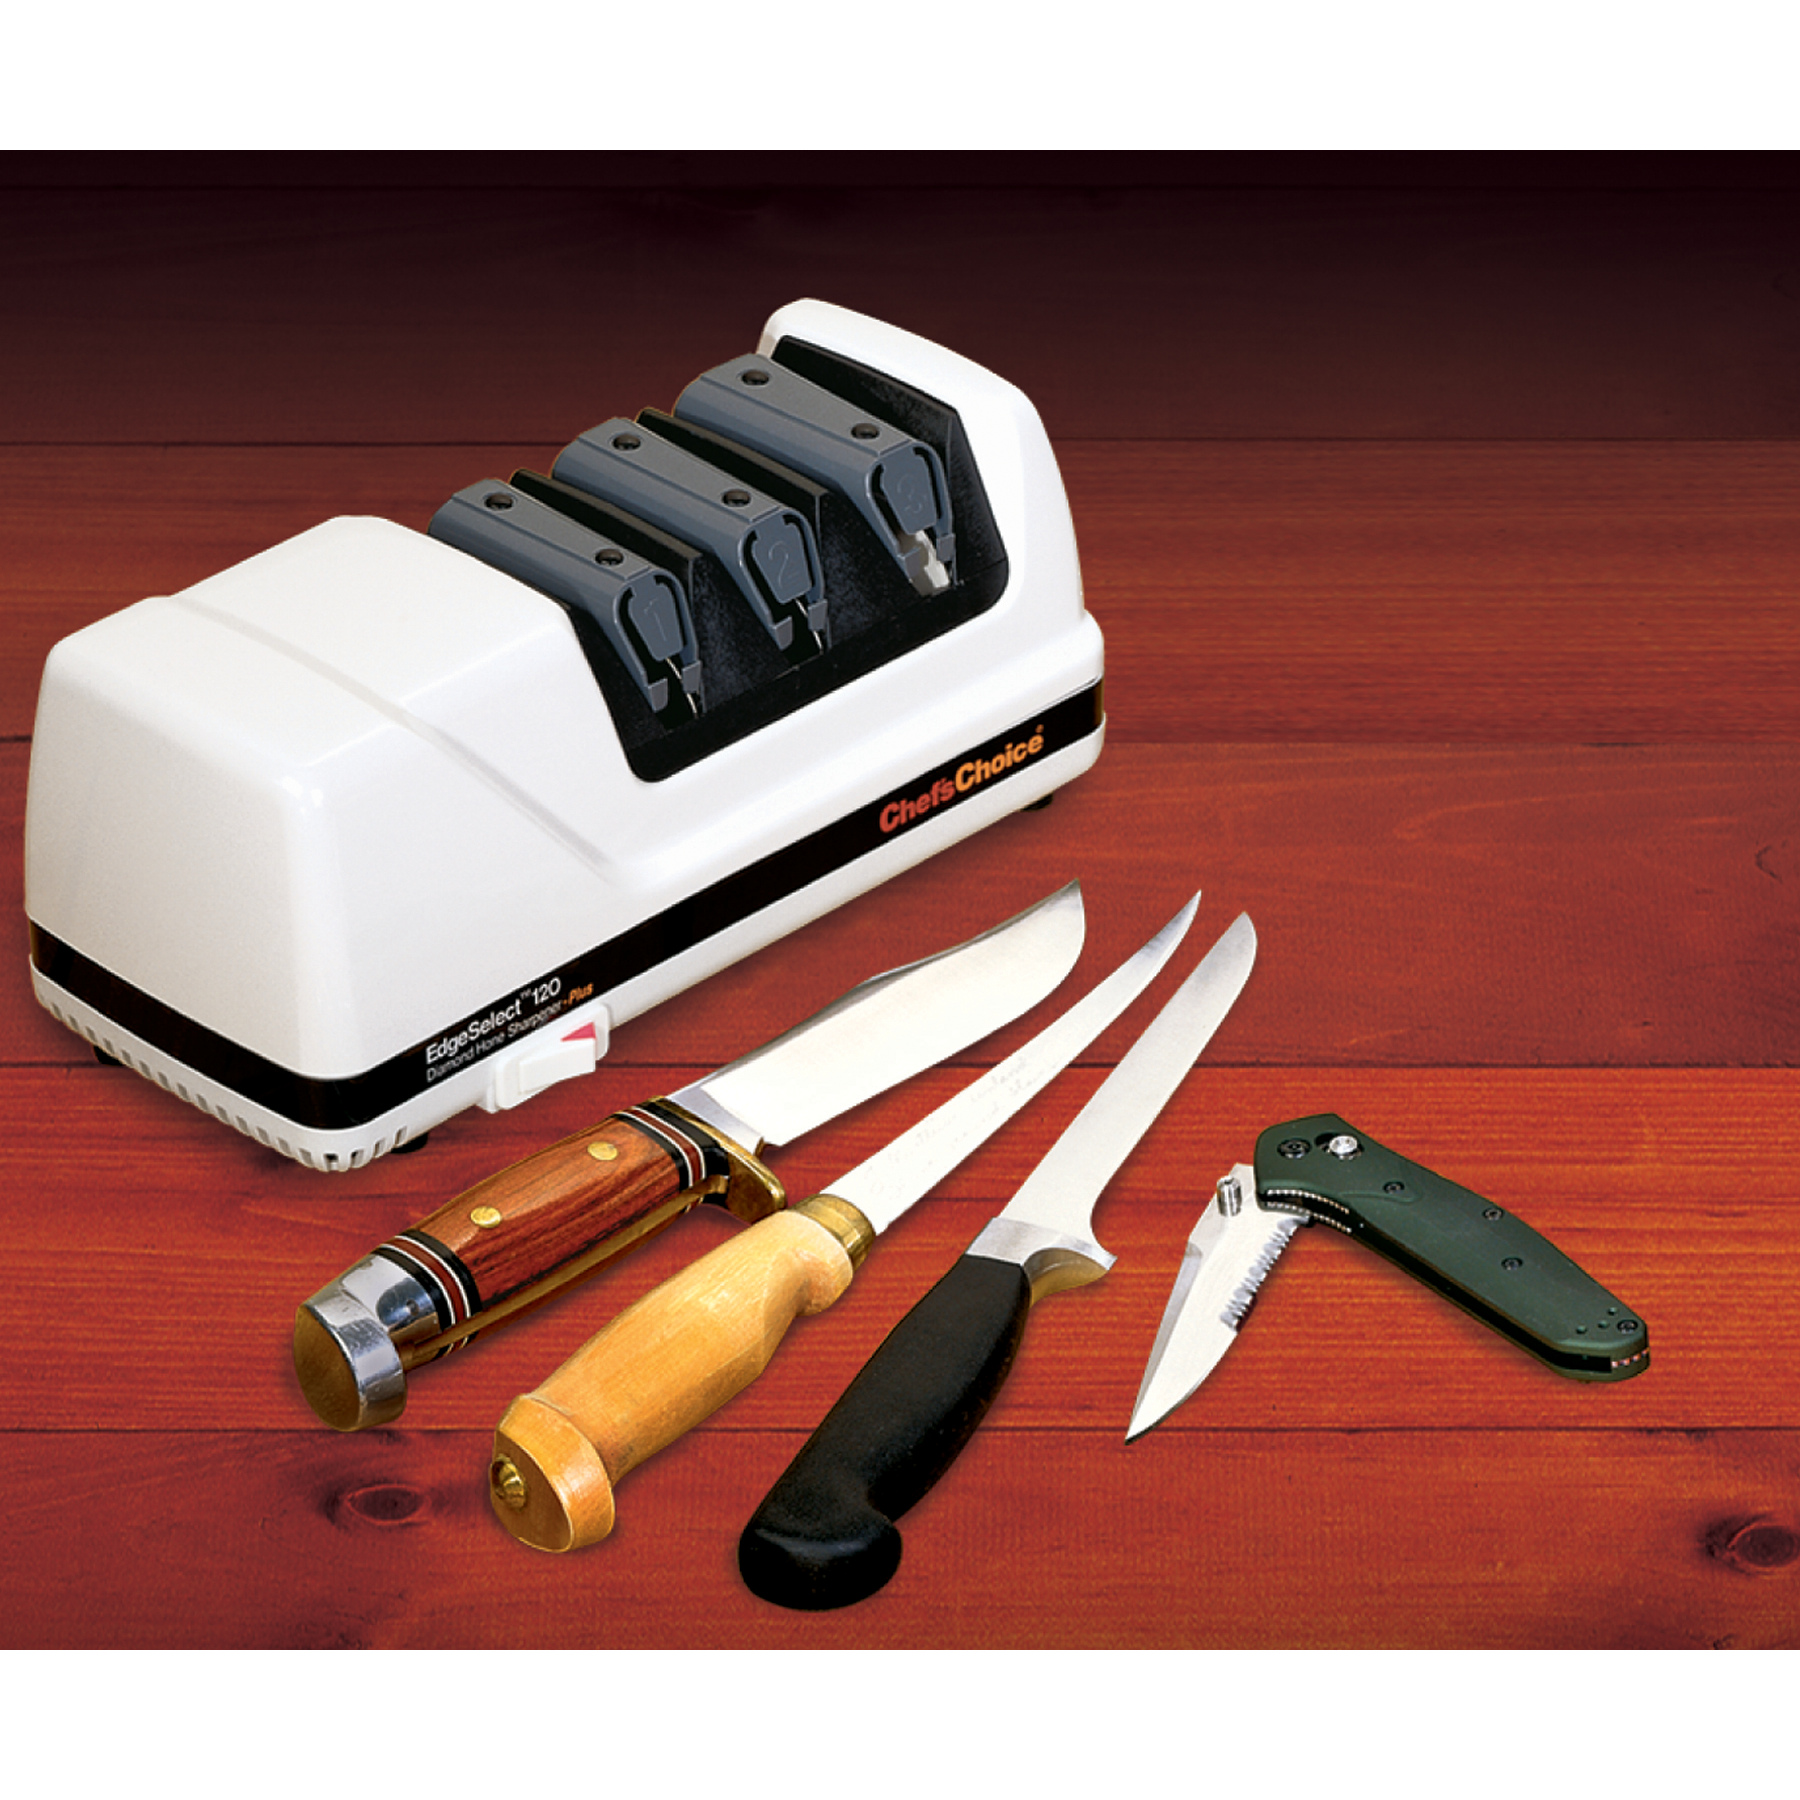 Tryk ned løn hane Diamond Hone® EdgeSelect® Model 120 elektrisk knivsliber - Chef's Choice -mærket